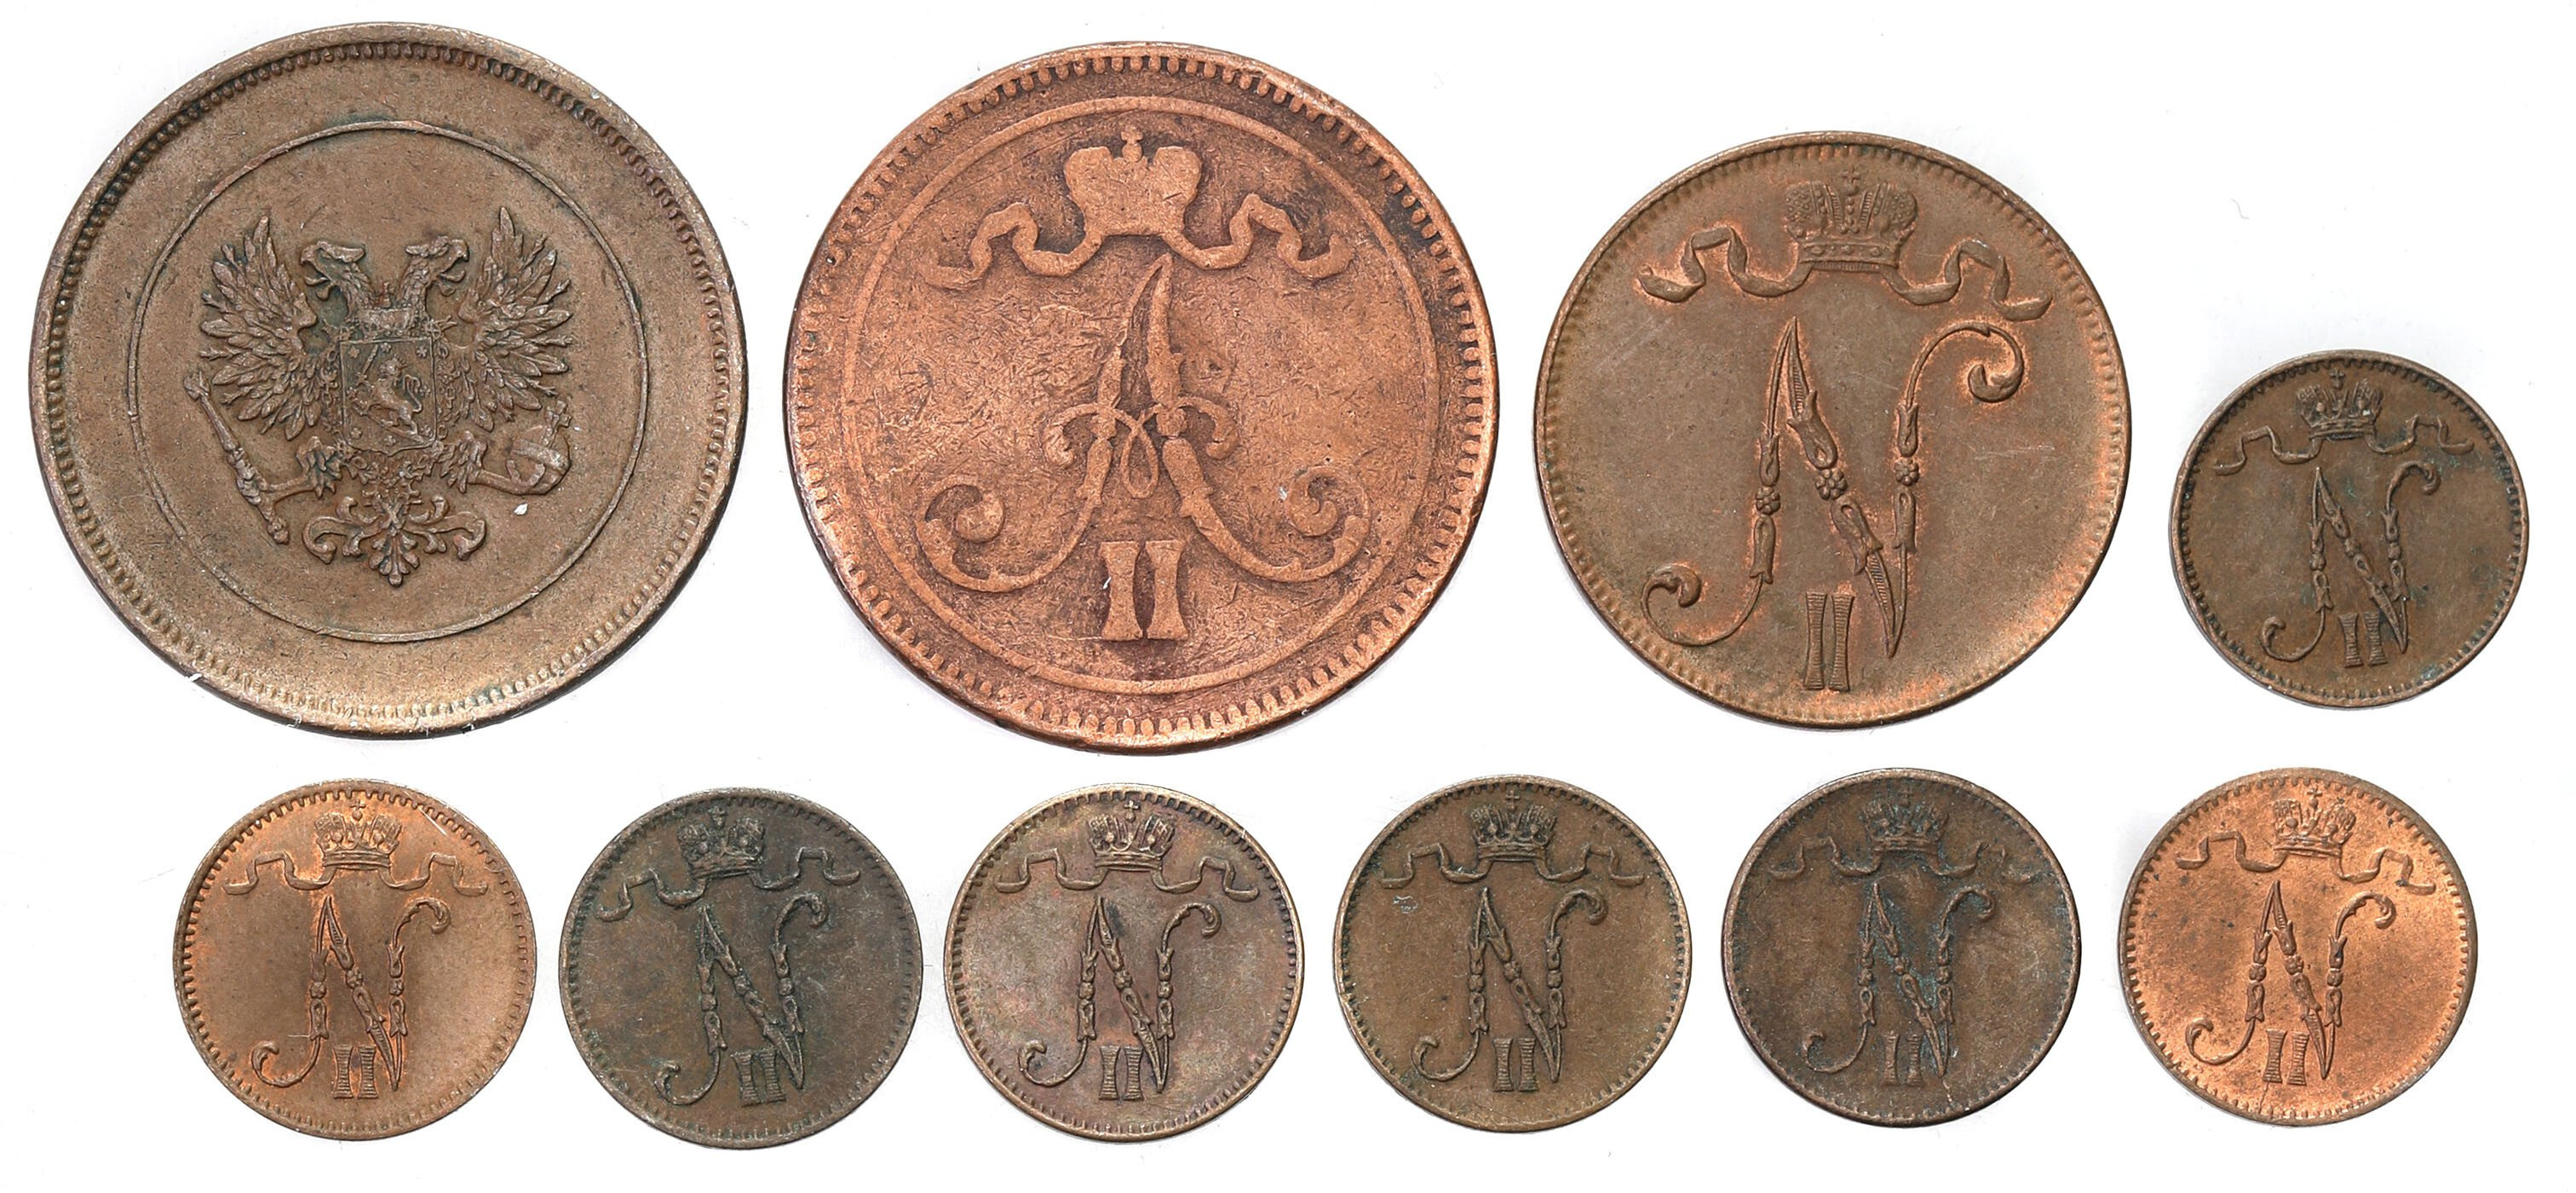 Rosja / Finlandia. 1 do 10 pennia 1867-1917 - zestaw 10 sztuk